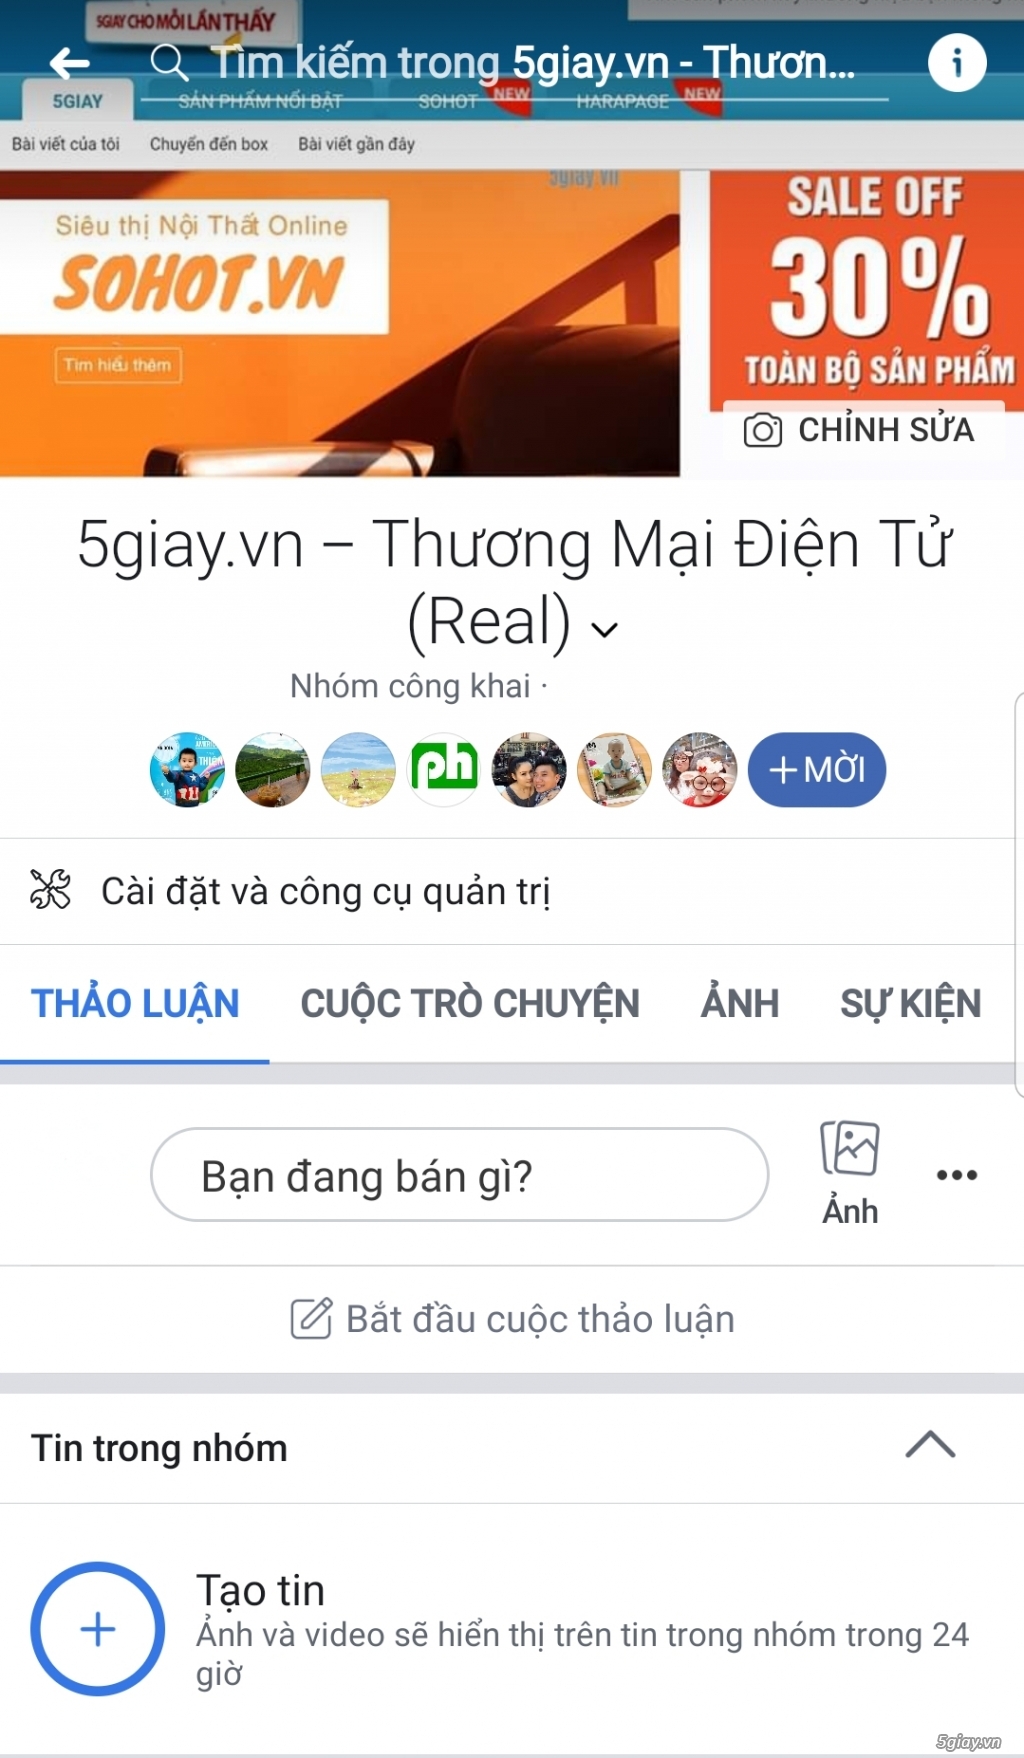 Group Mua Bán Chính Thức 5giay.vn